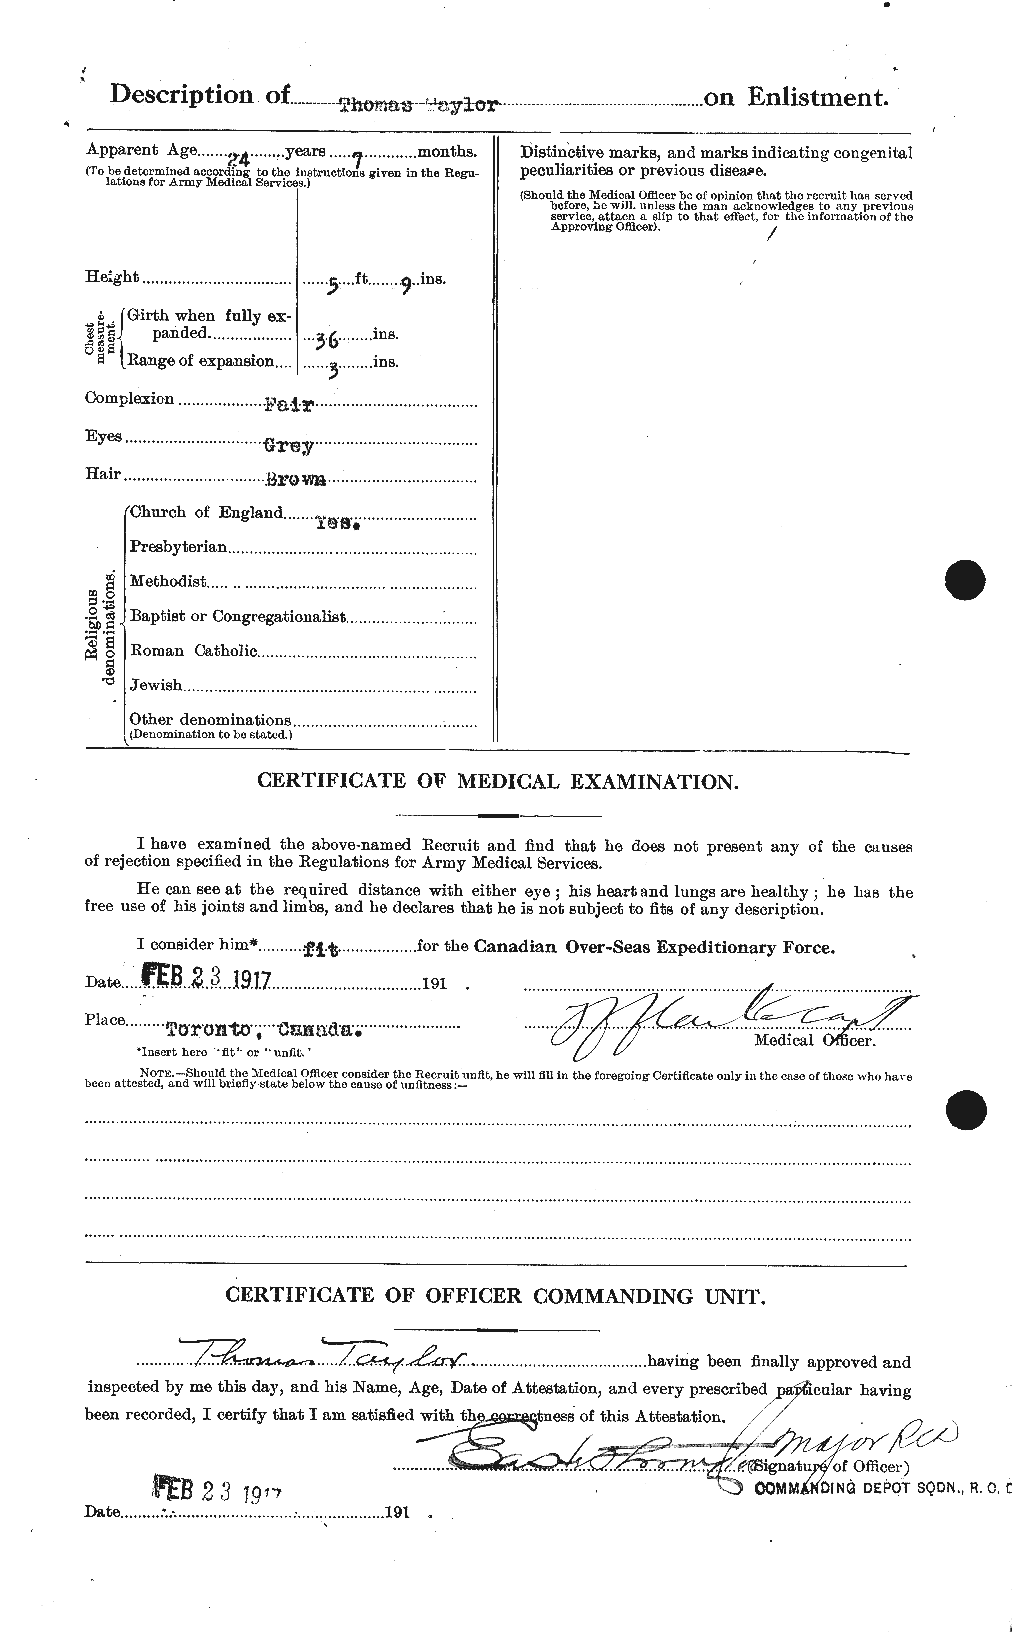 Dossiers du Personnel de la Première Guerre mondiale - CEC 627943b